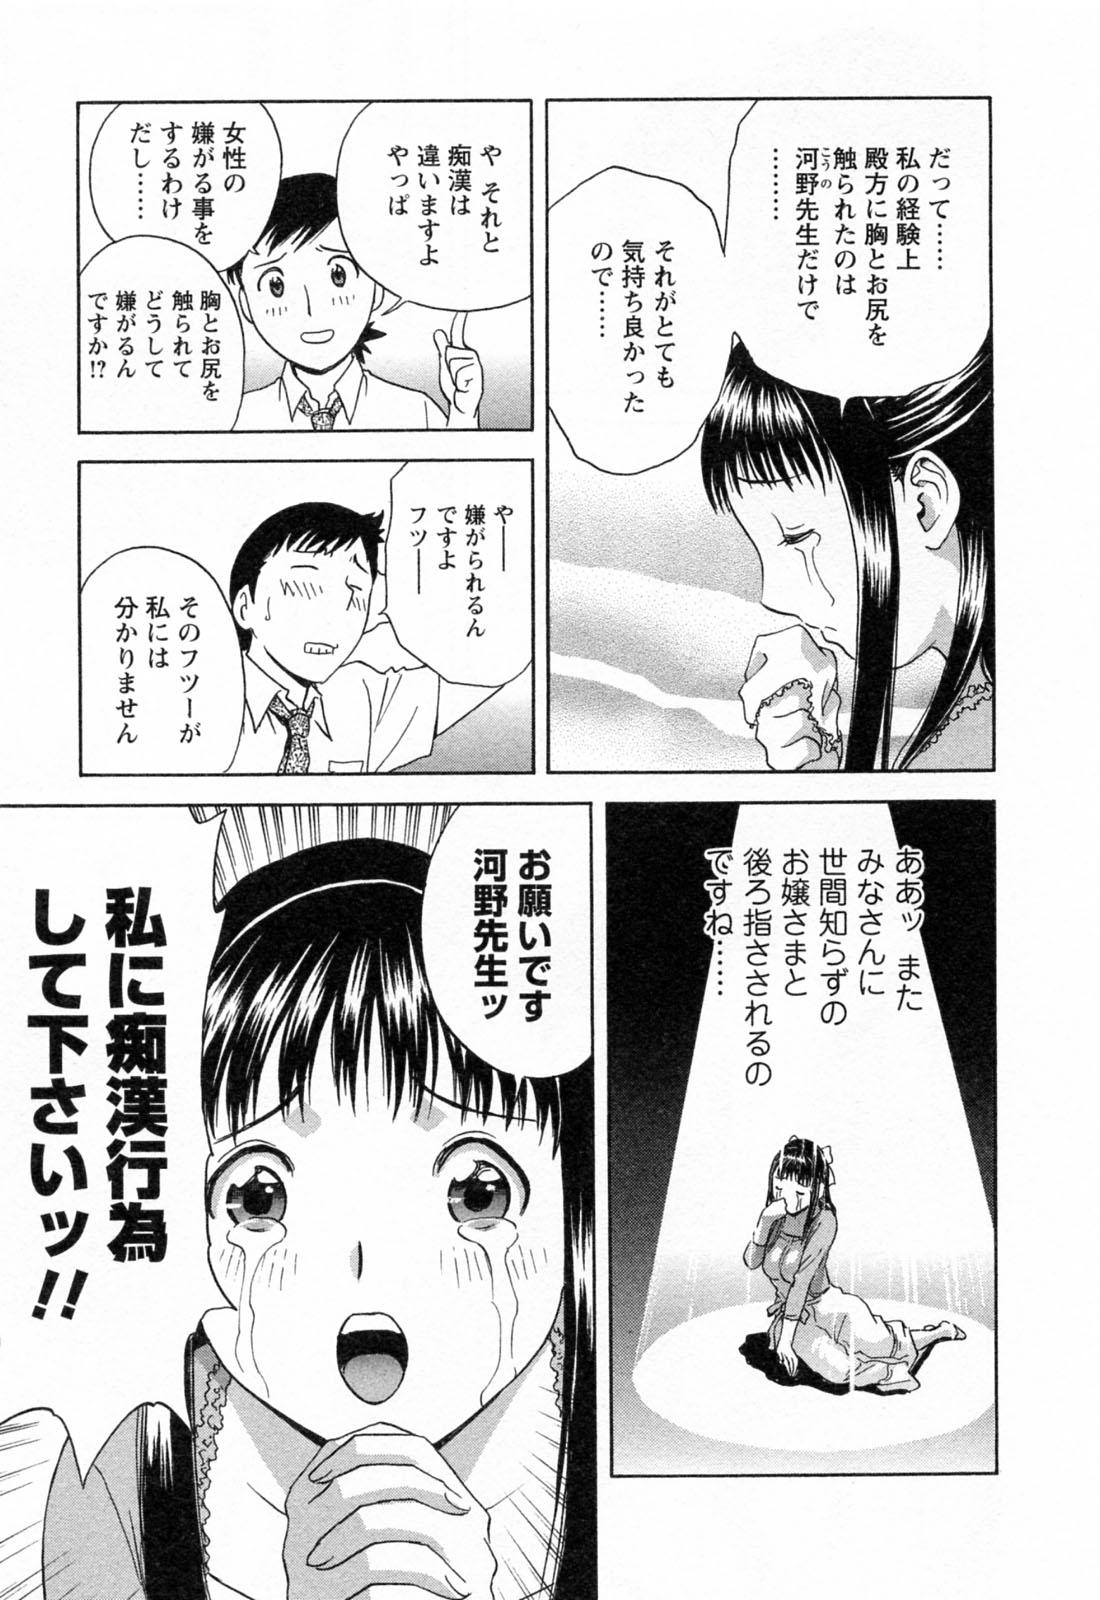 [Hidemaru] Mo-Retsu! Boin Sensei (Boing Boing Teacher) Vol.4 80